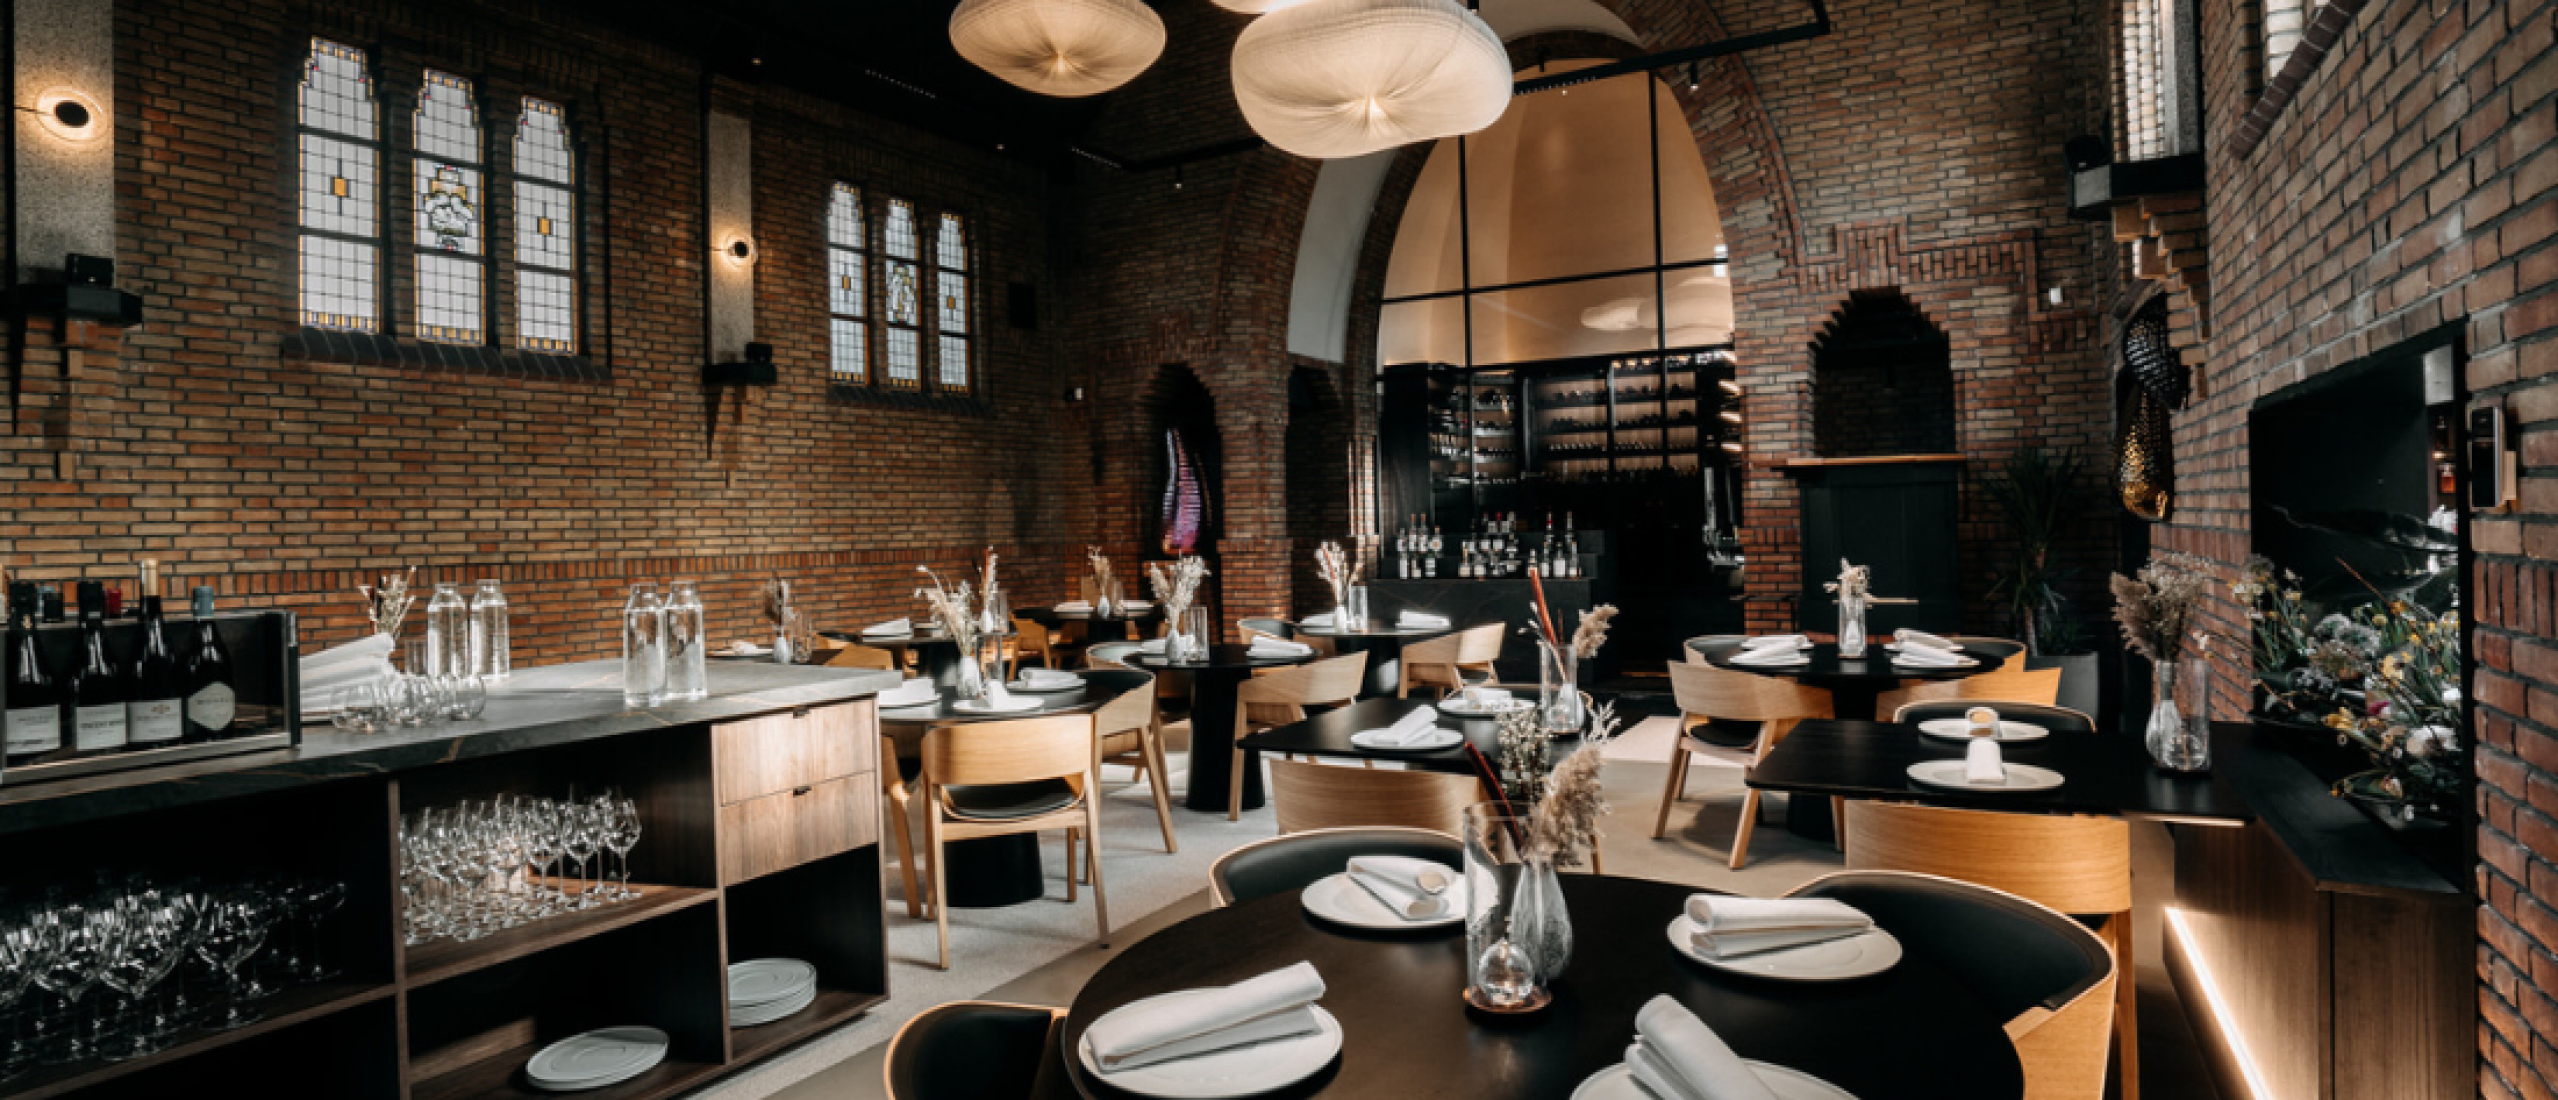 Nieuw sterrenrestaurant Noor* in Groningen geeft studenten 50% korting